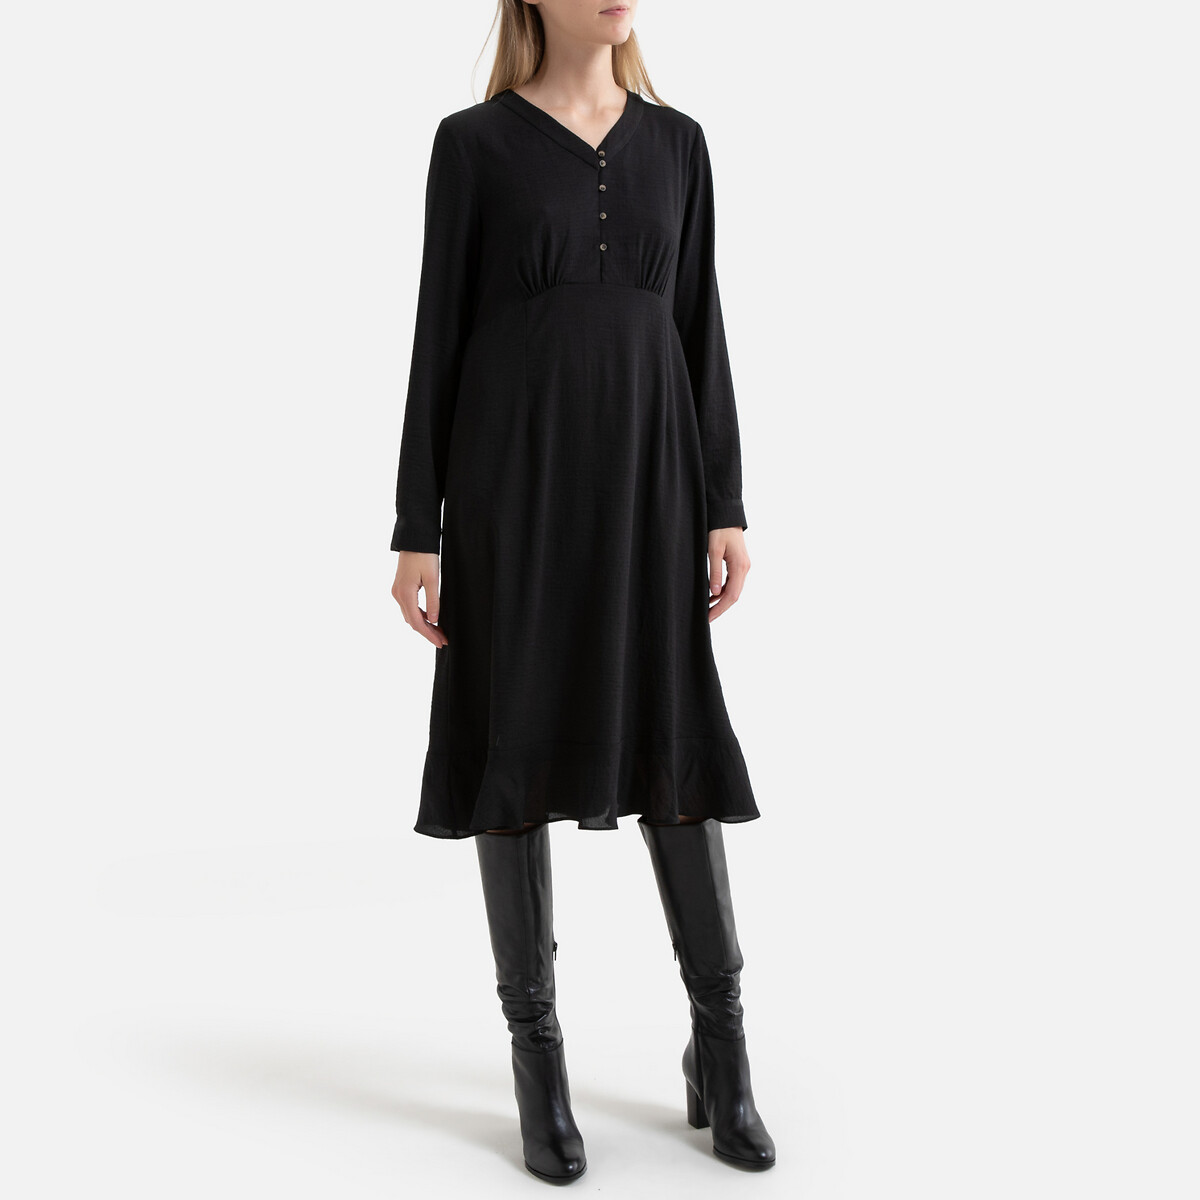 Платье La Redoute Короткое на пуговицах длинные рукава 3(L) черный, размер 3(L) Короткое на пуговицах длинные рукава 3(L) черный - фото 2